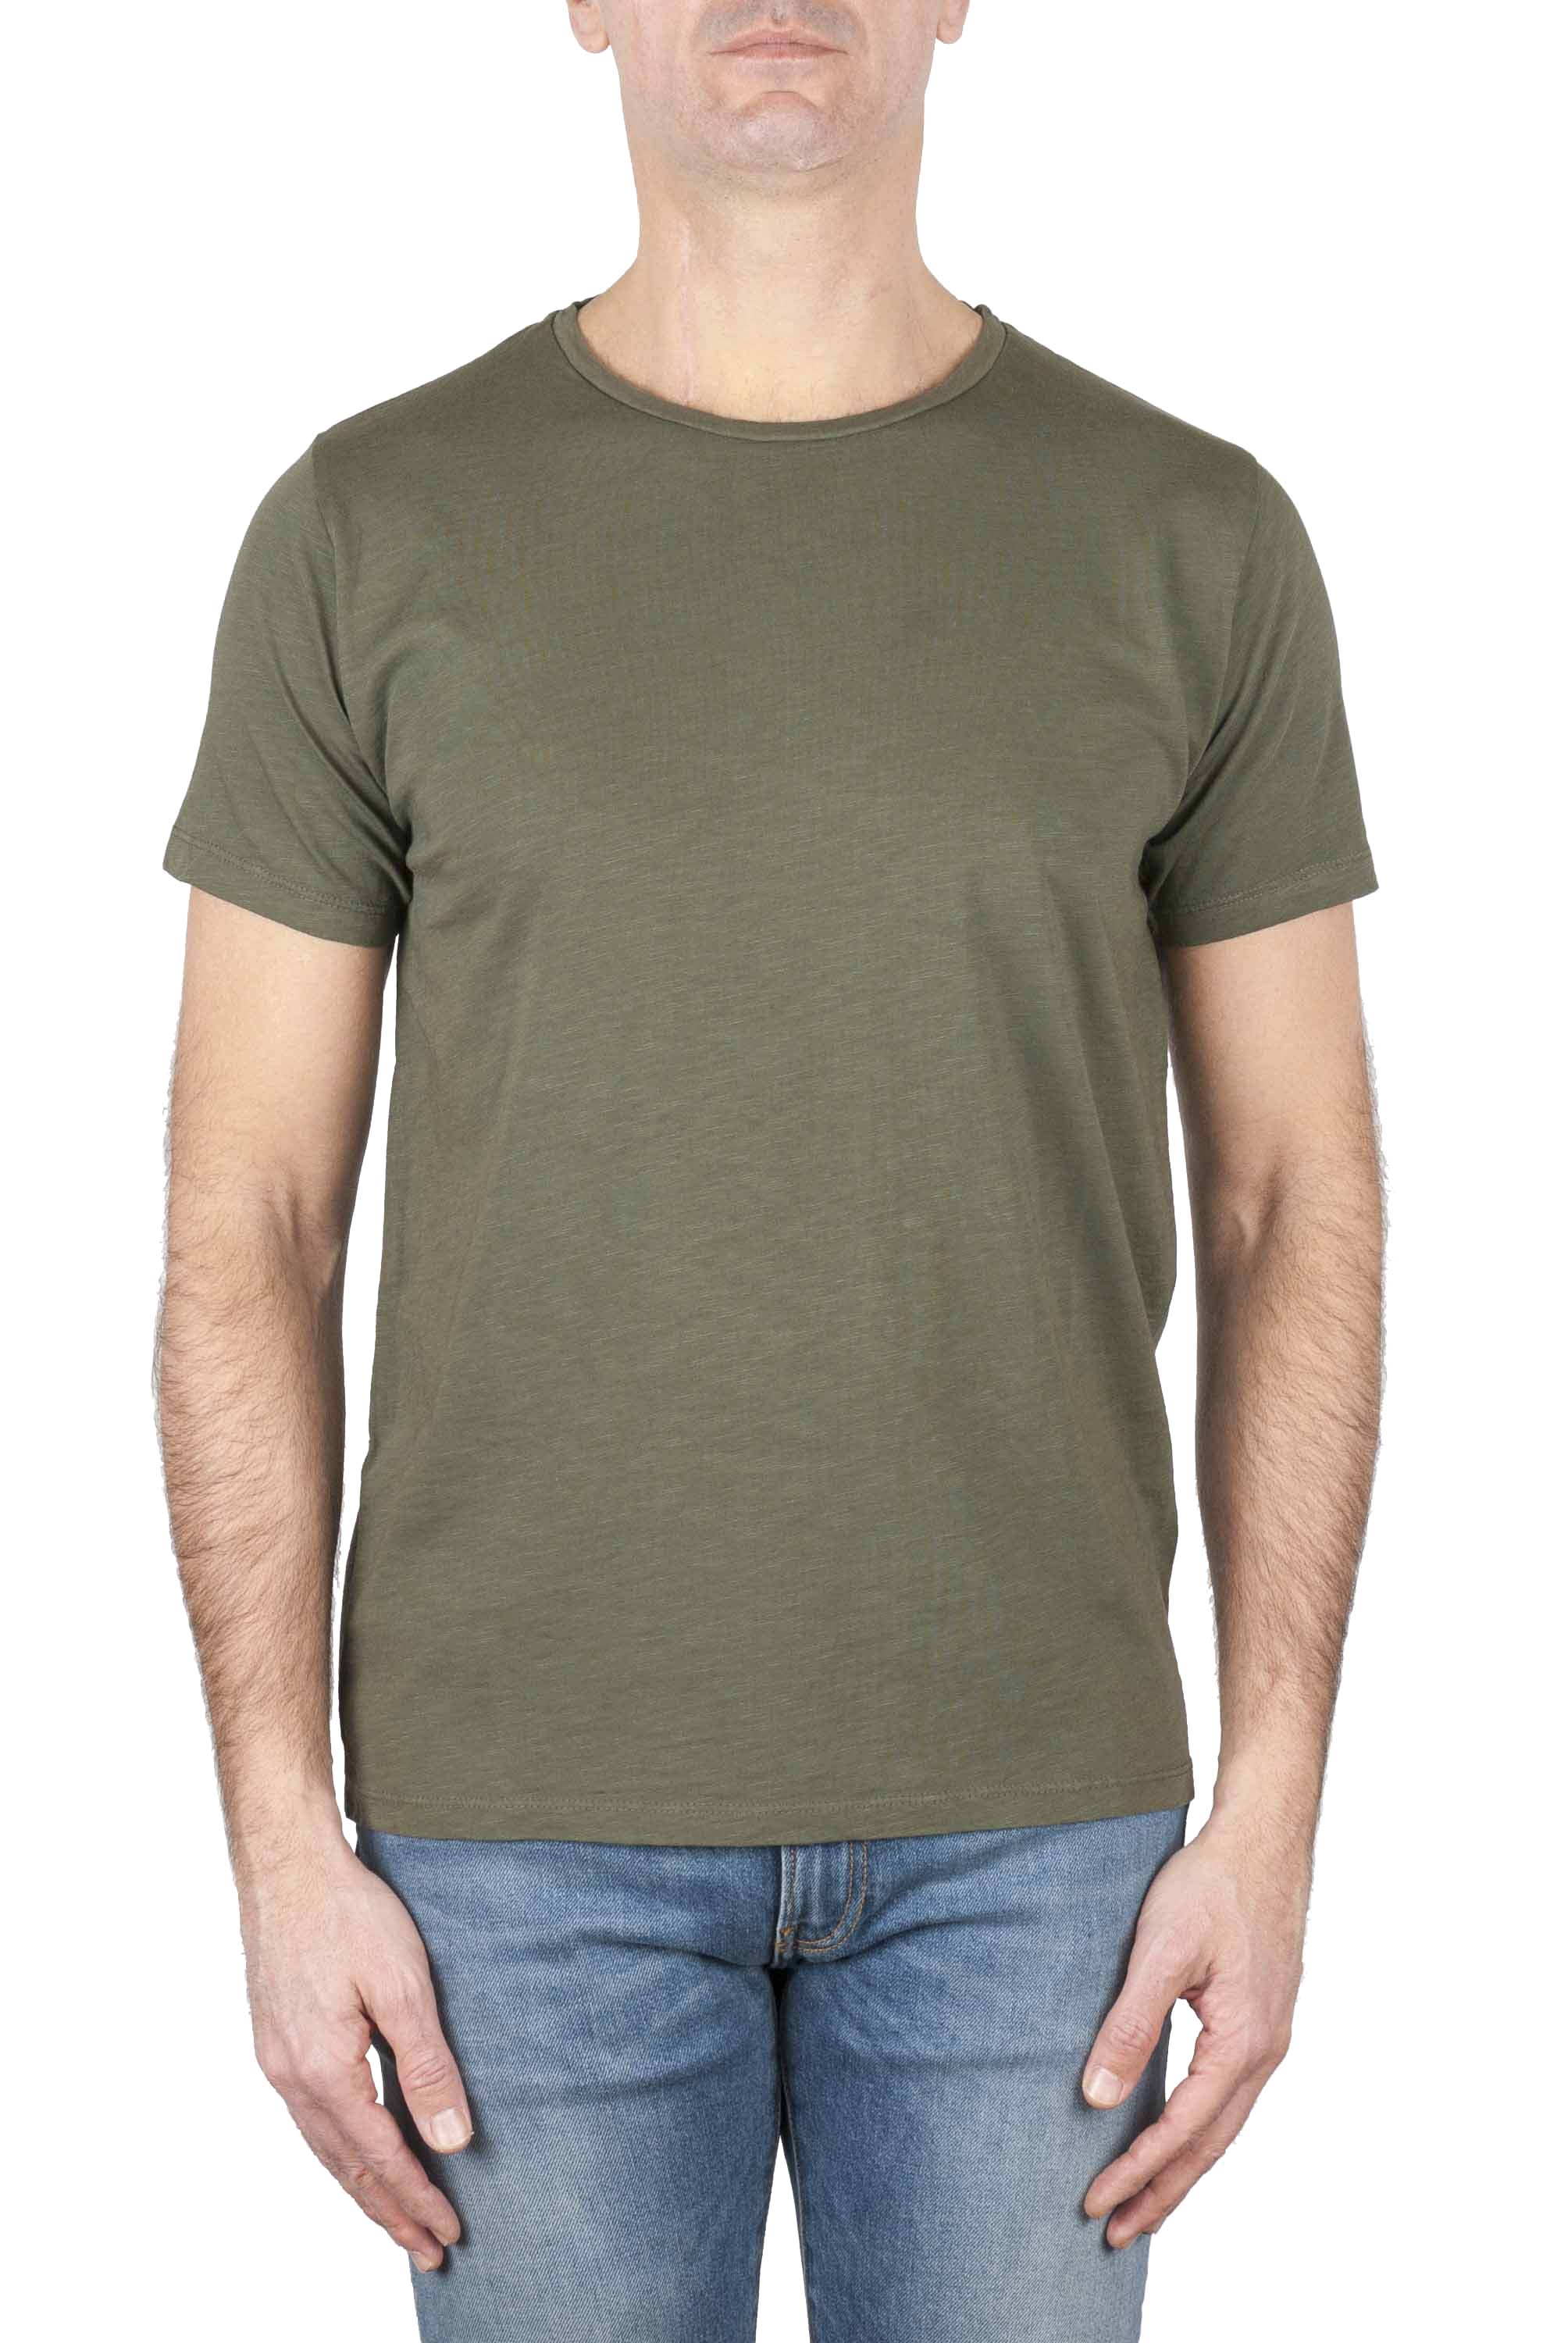 SBU 01645 Camiseta de algodón con cuello redondo en color verde 01